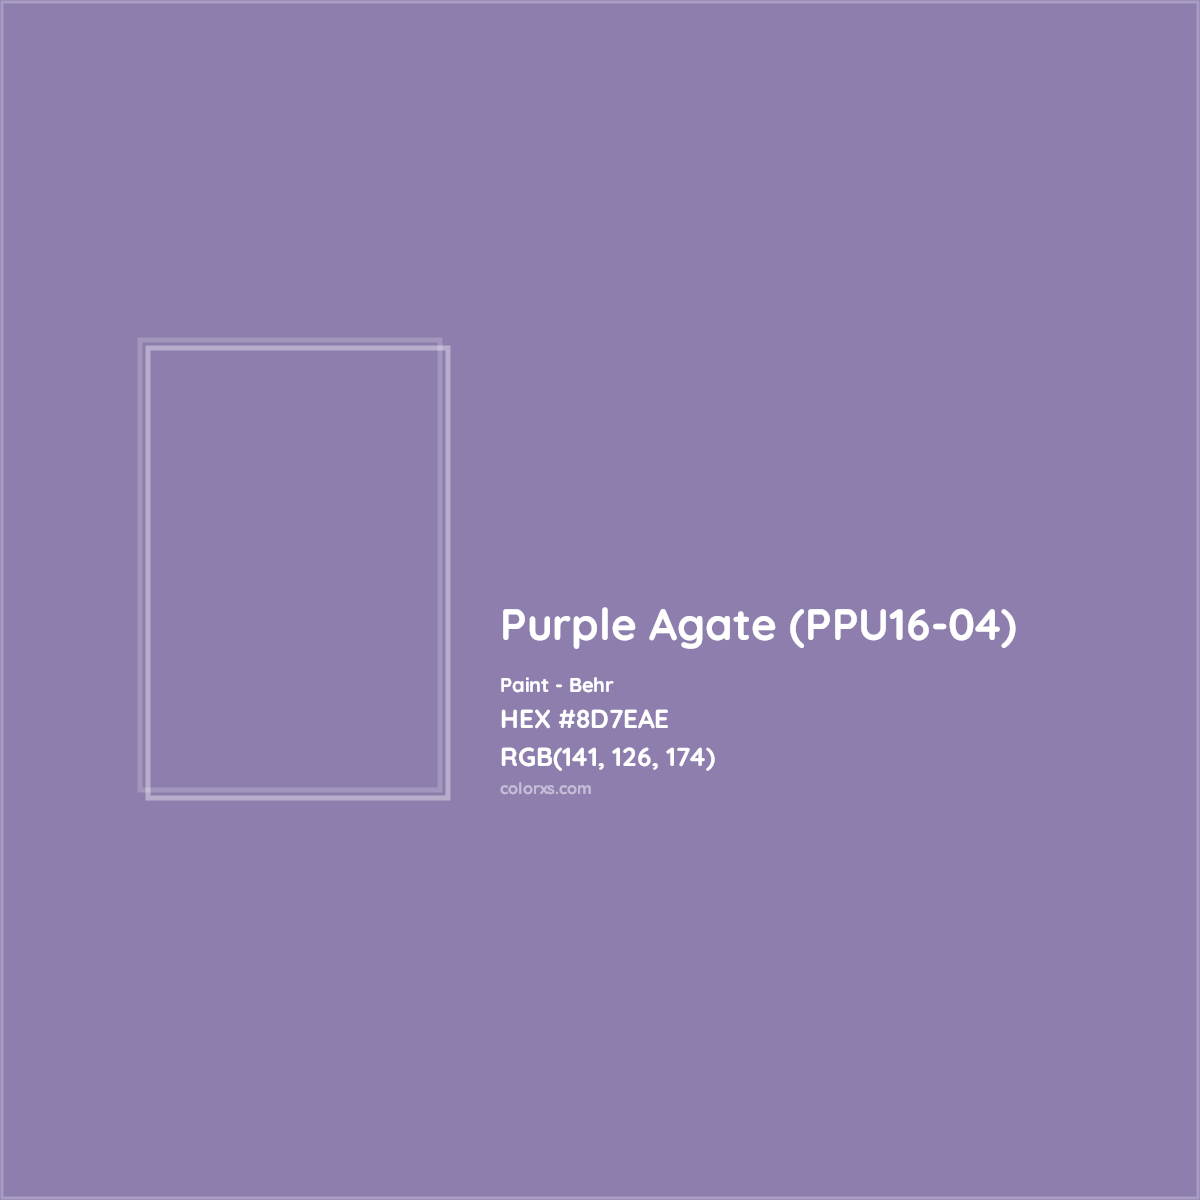 HEX #8D7EAE Purple Agate (PPU16-04) Paint Behr - Color Code